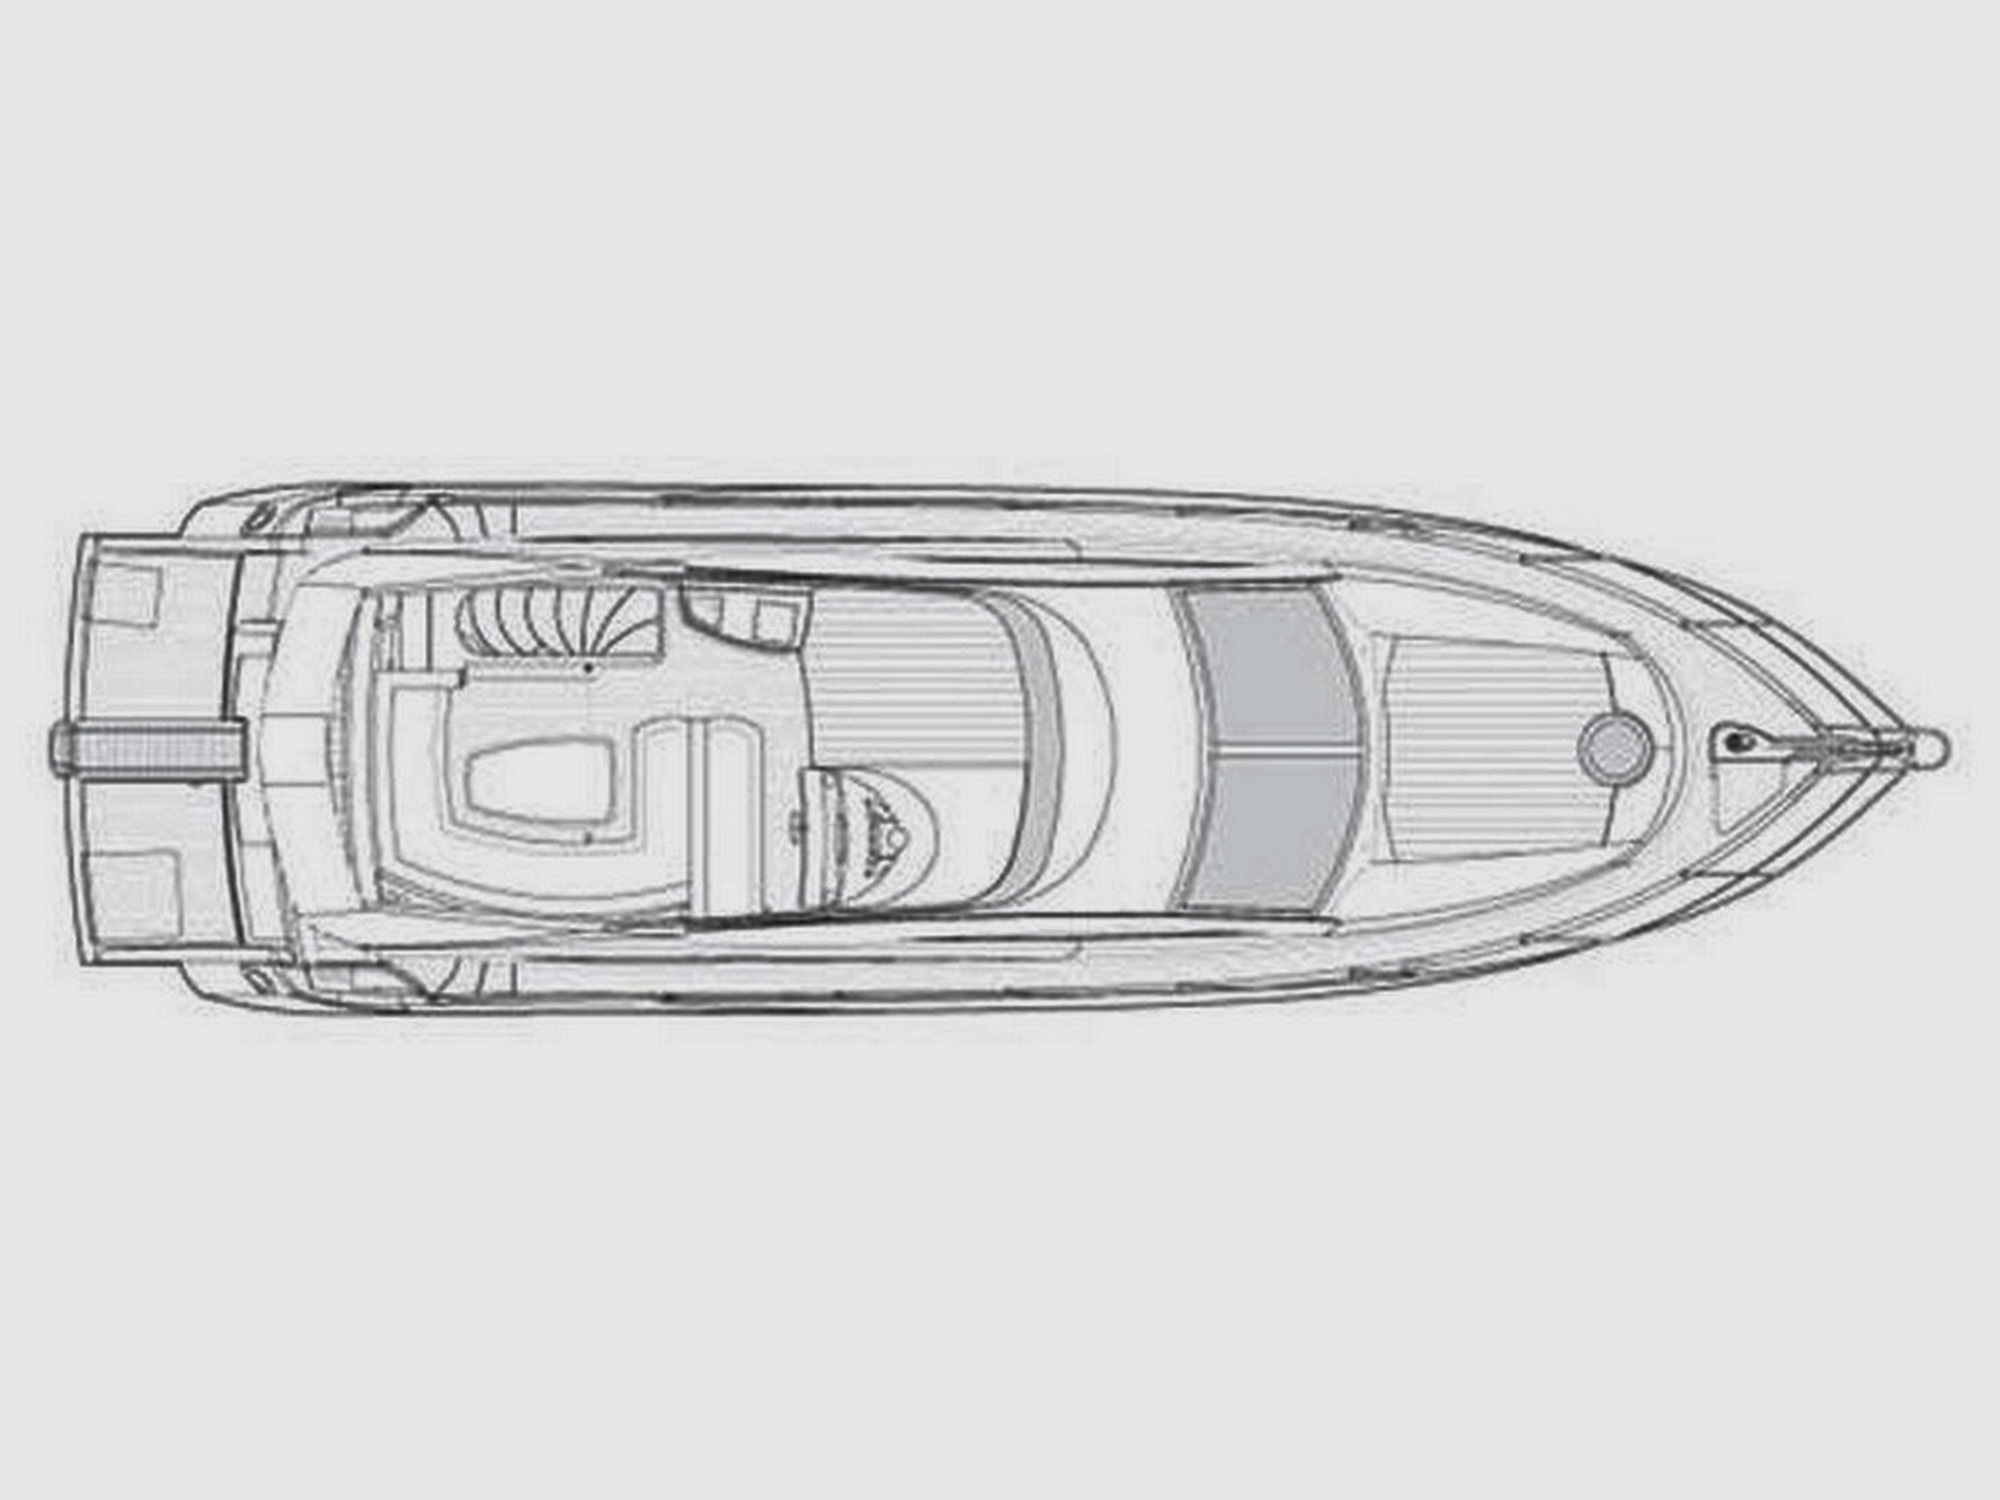 Drettmann Yachts - Sunseeker 50 Manhatten